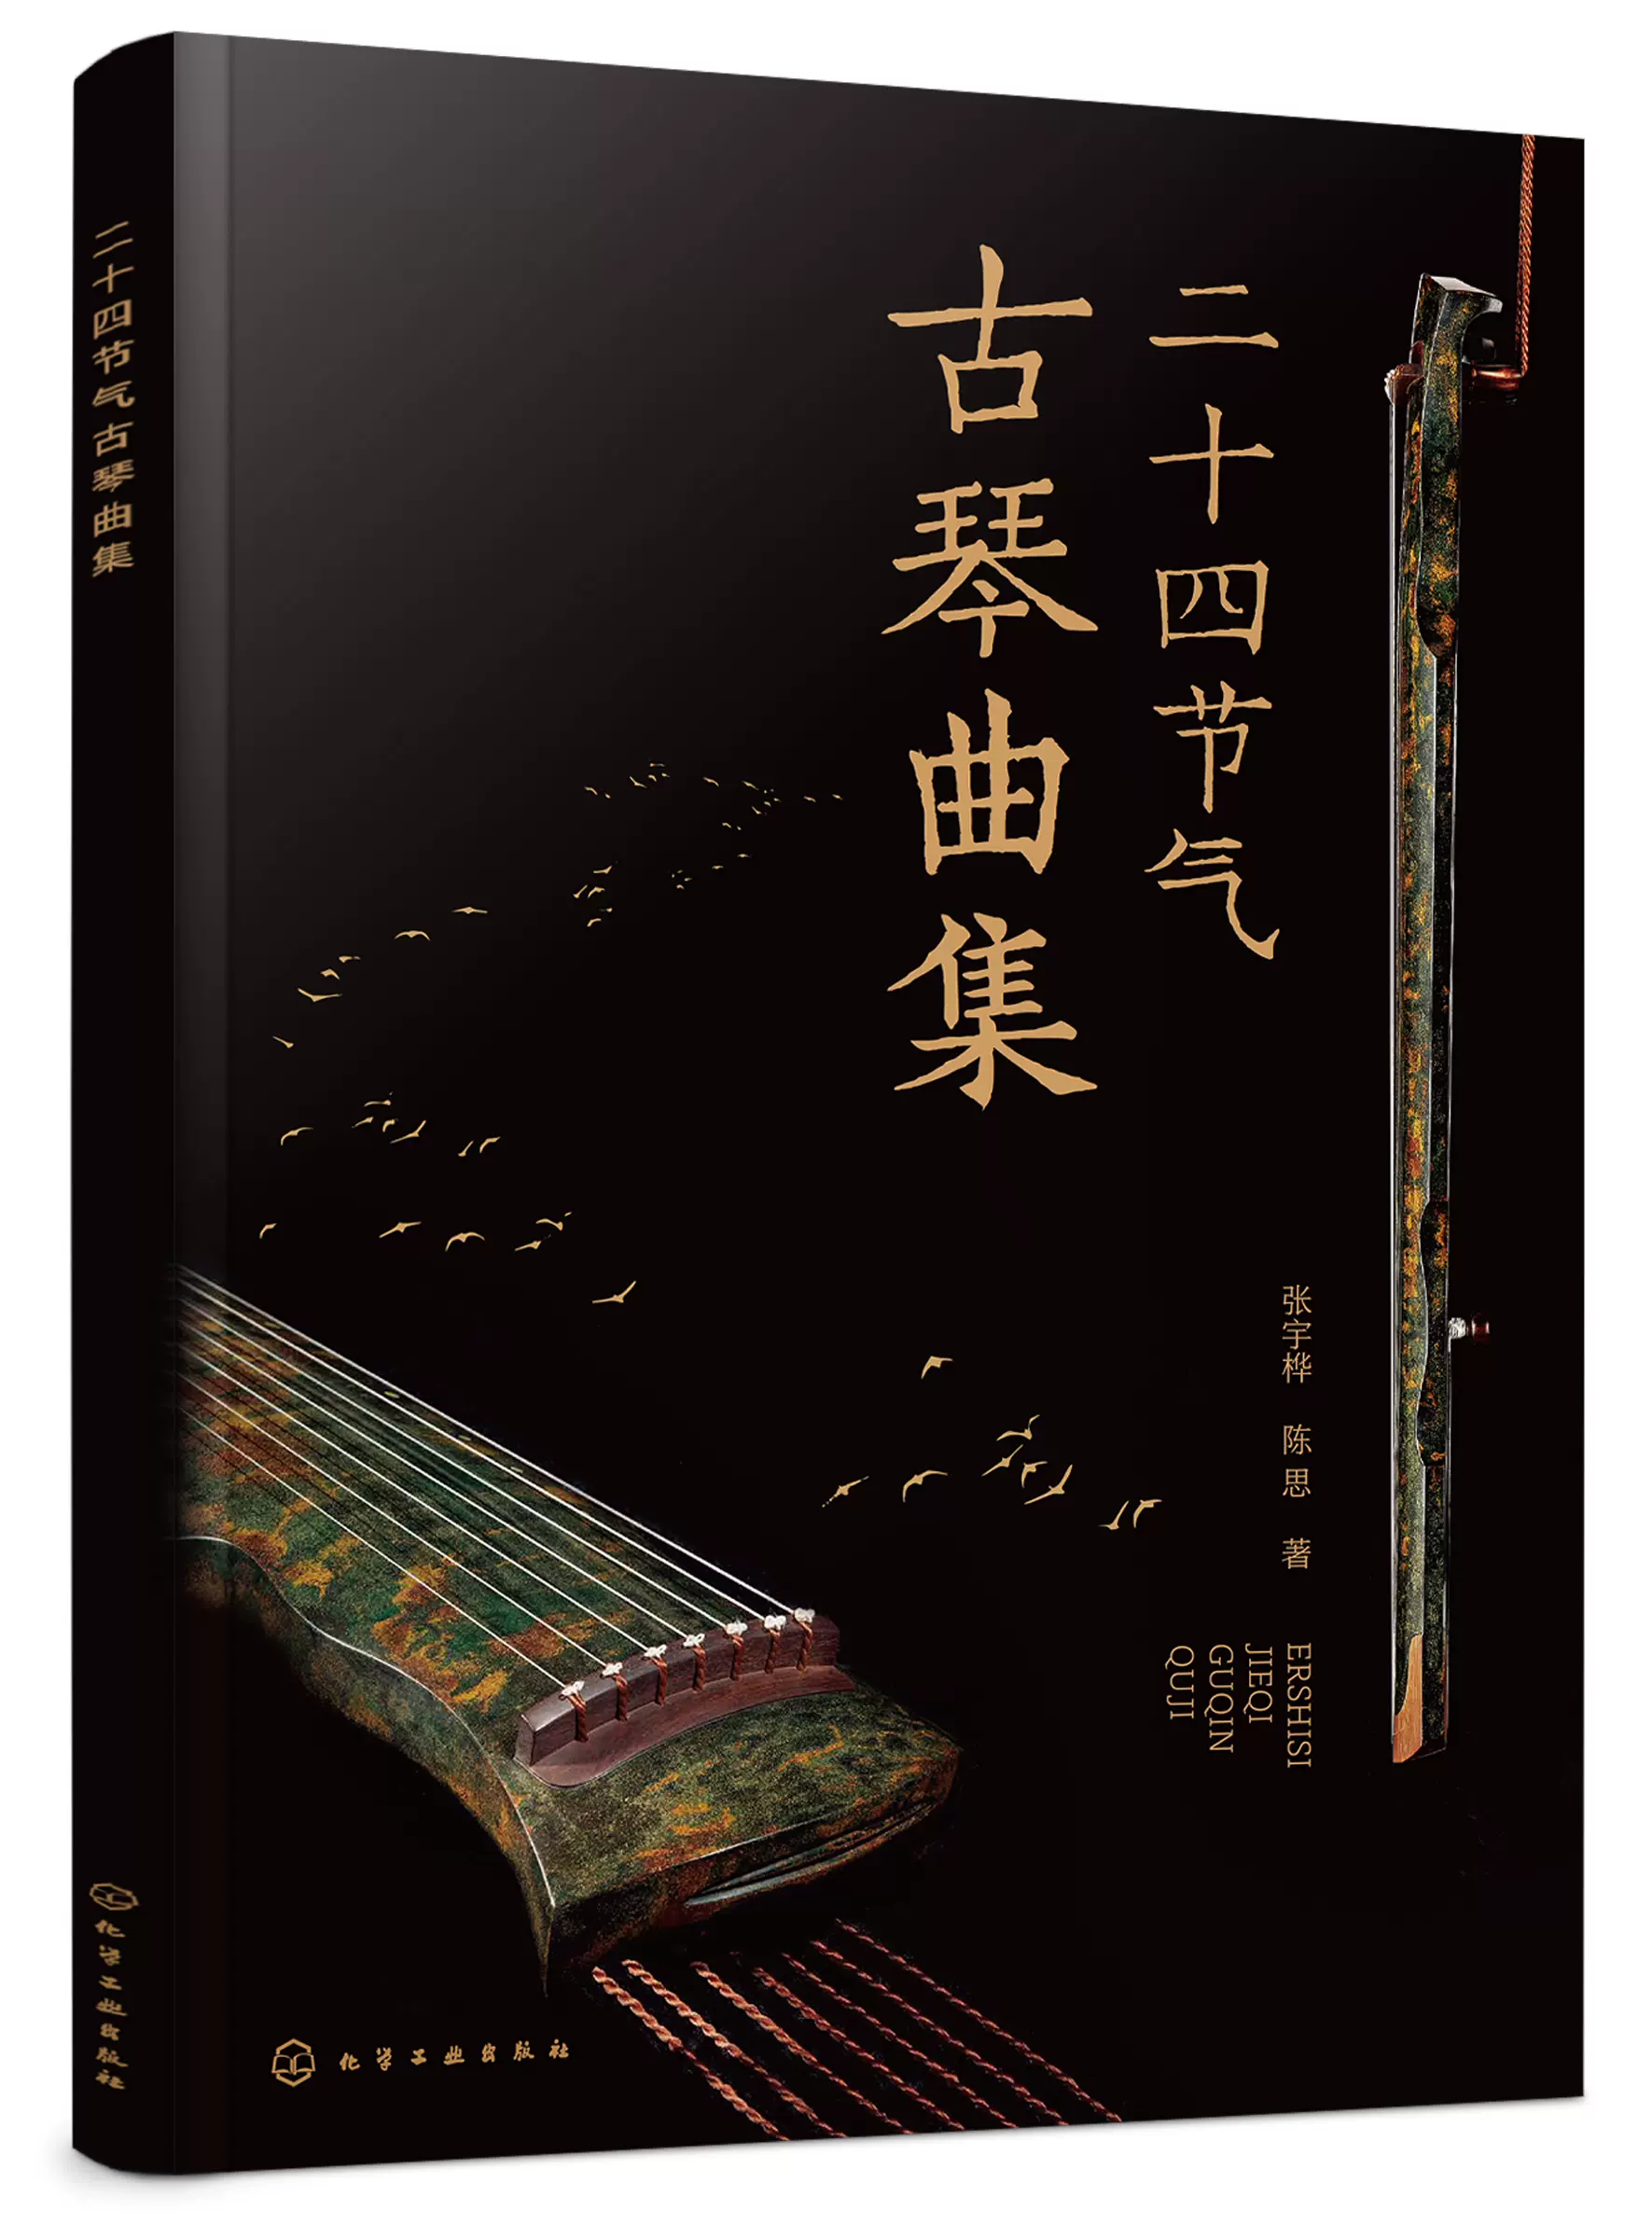 二十四节气古琴曲集张宇桦、陈思著化学工业出版社9787122445780正版 